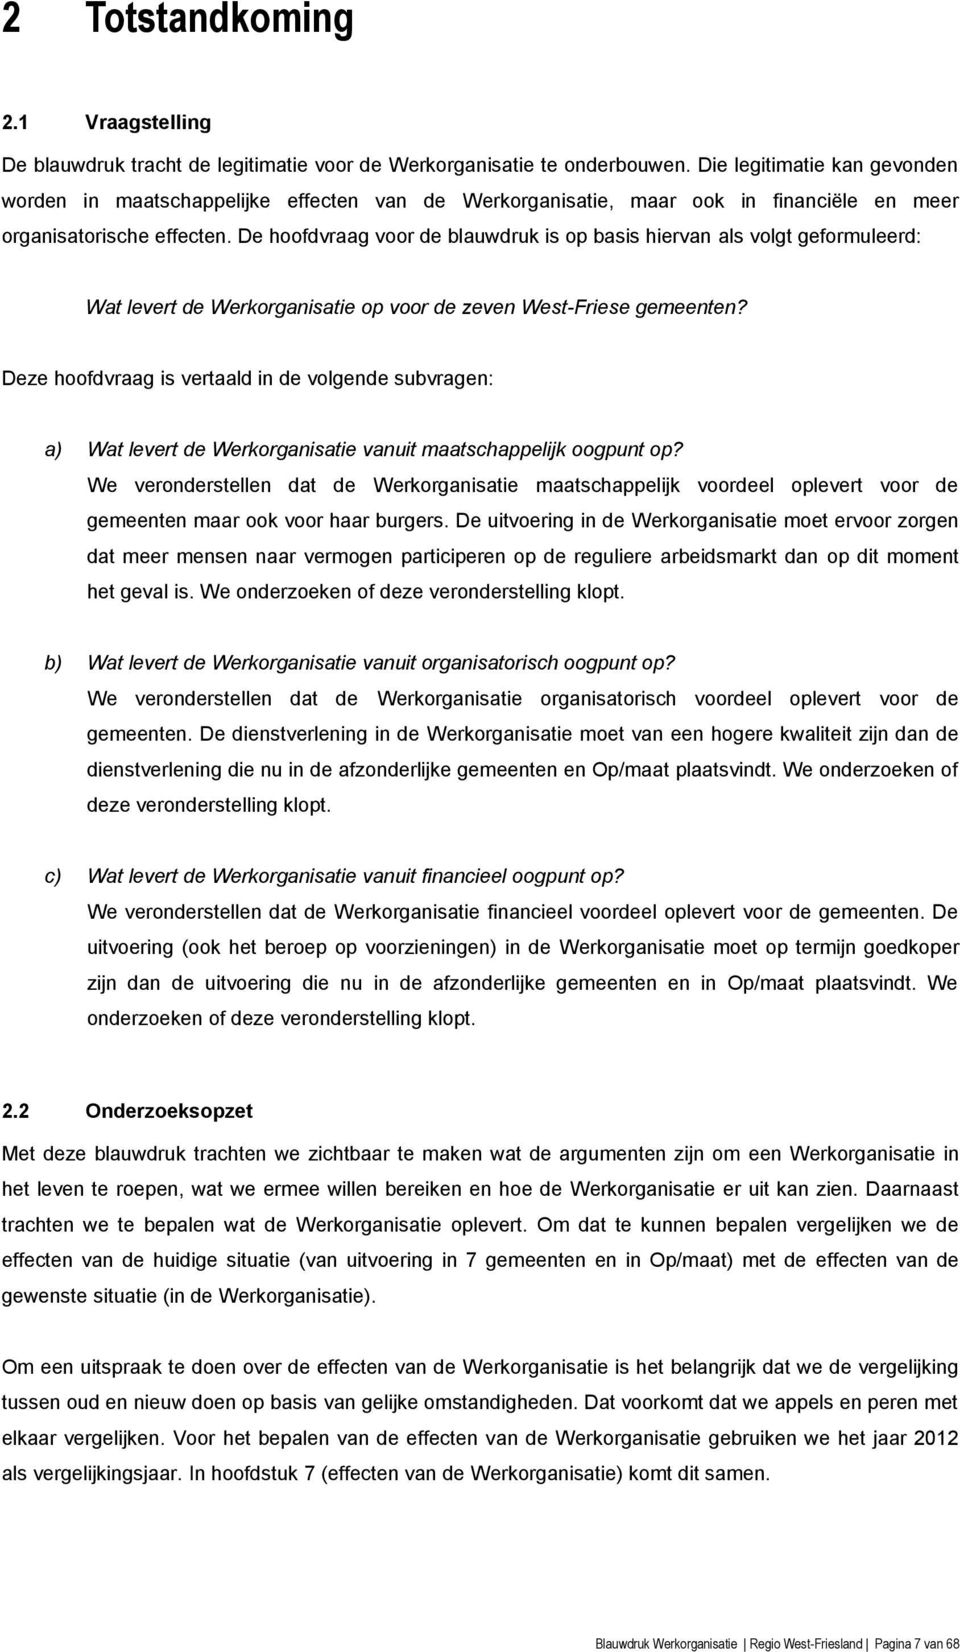 De hoofdvraag voor de blauwdruk is op basis hiervan als volgt geformuleerd: Wat levert de Werkorganisatie op voor de zeven West-Friese gemeenten?